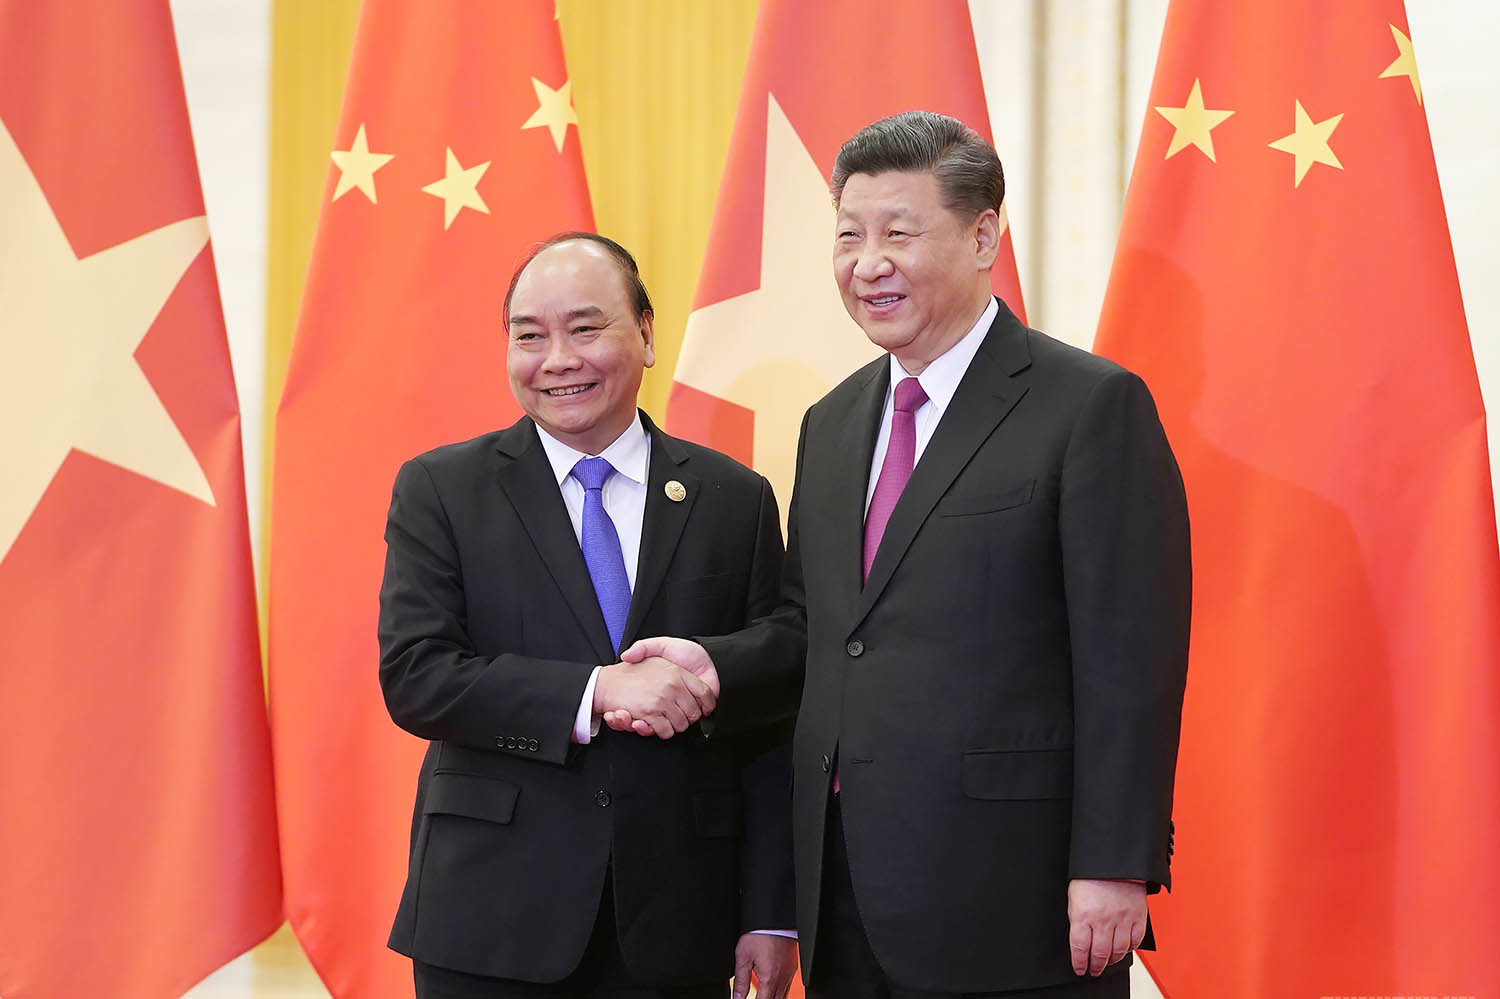 Chủ tịch nước chúc mừng Tổng Bí thư, Chủ tịch Trung Quốc nhân dịp Olympic